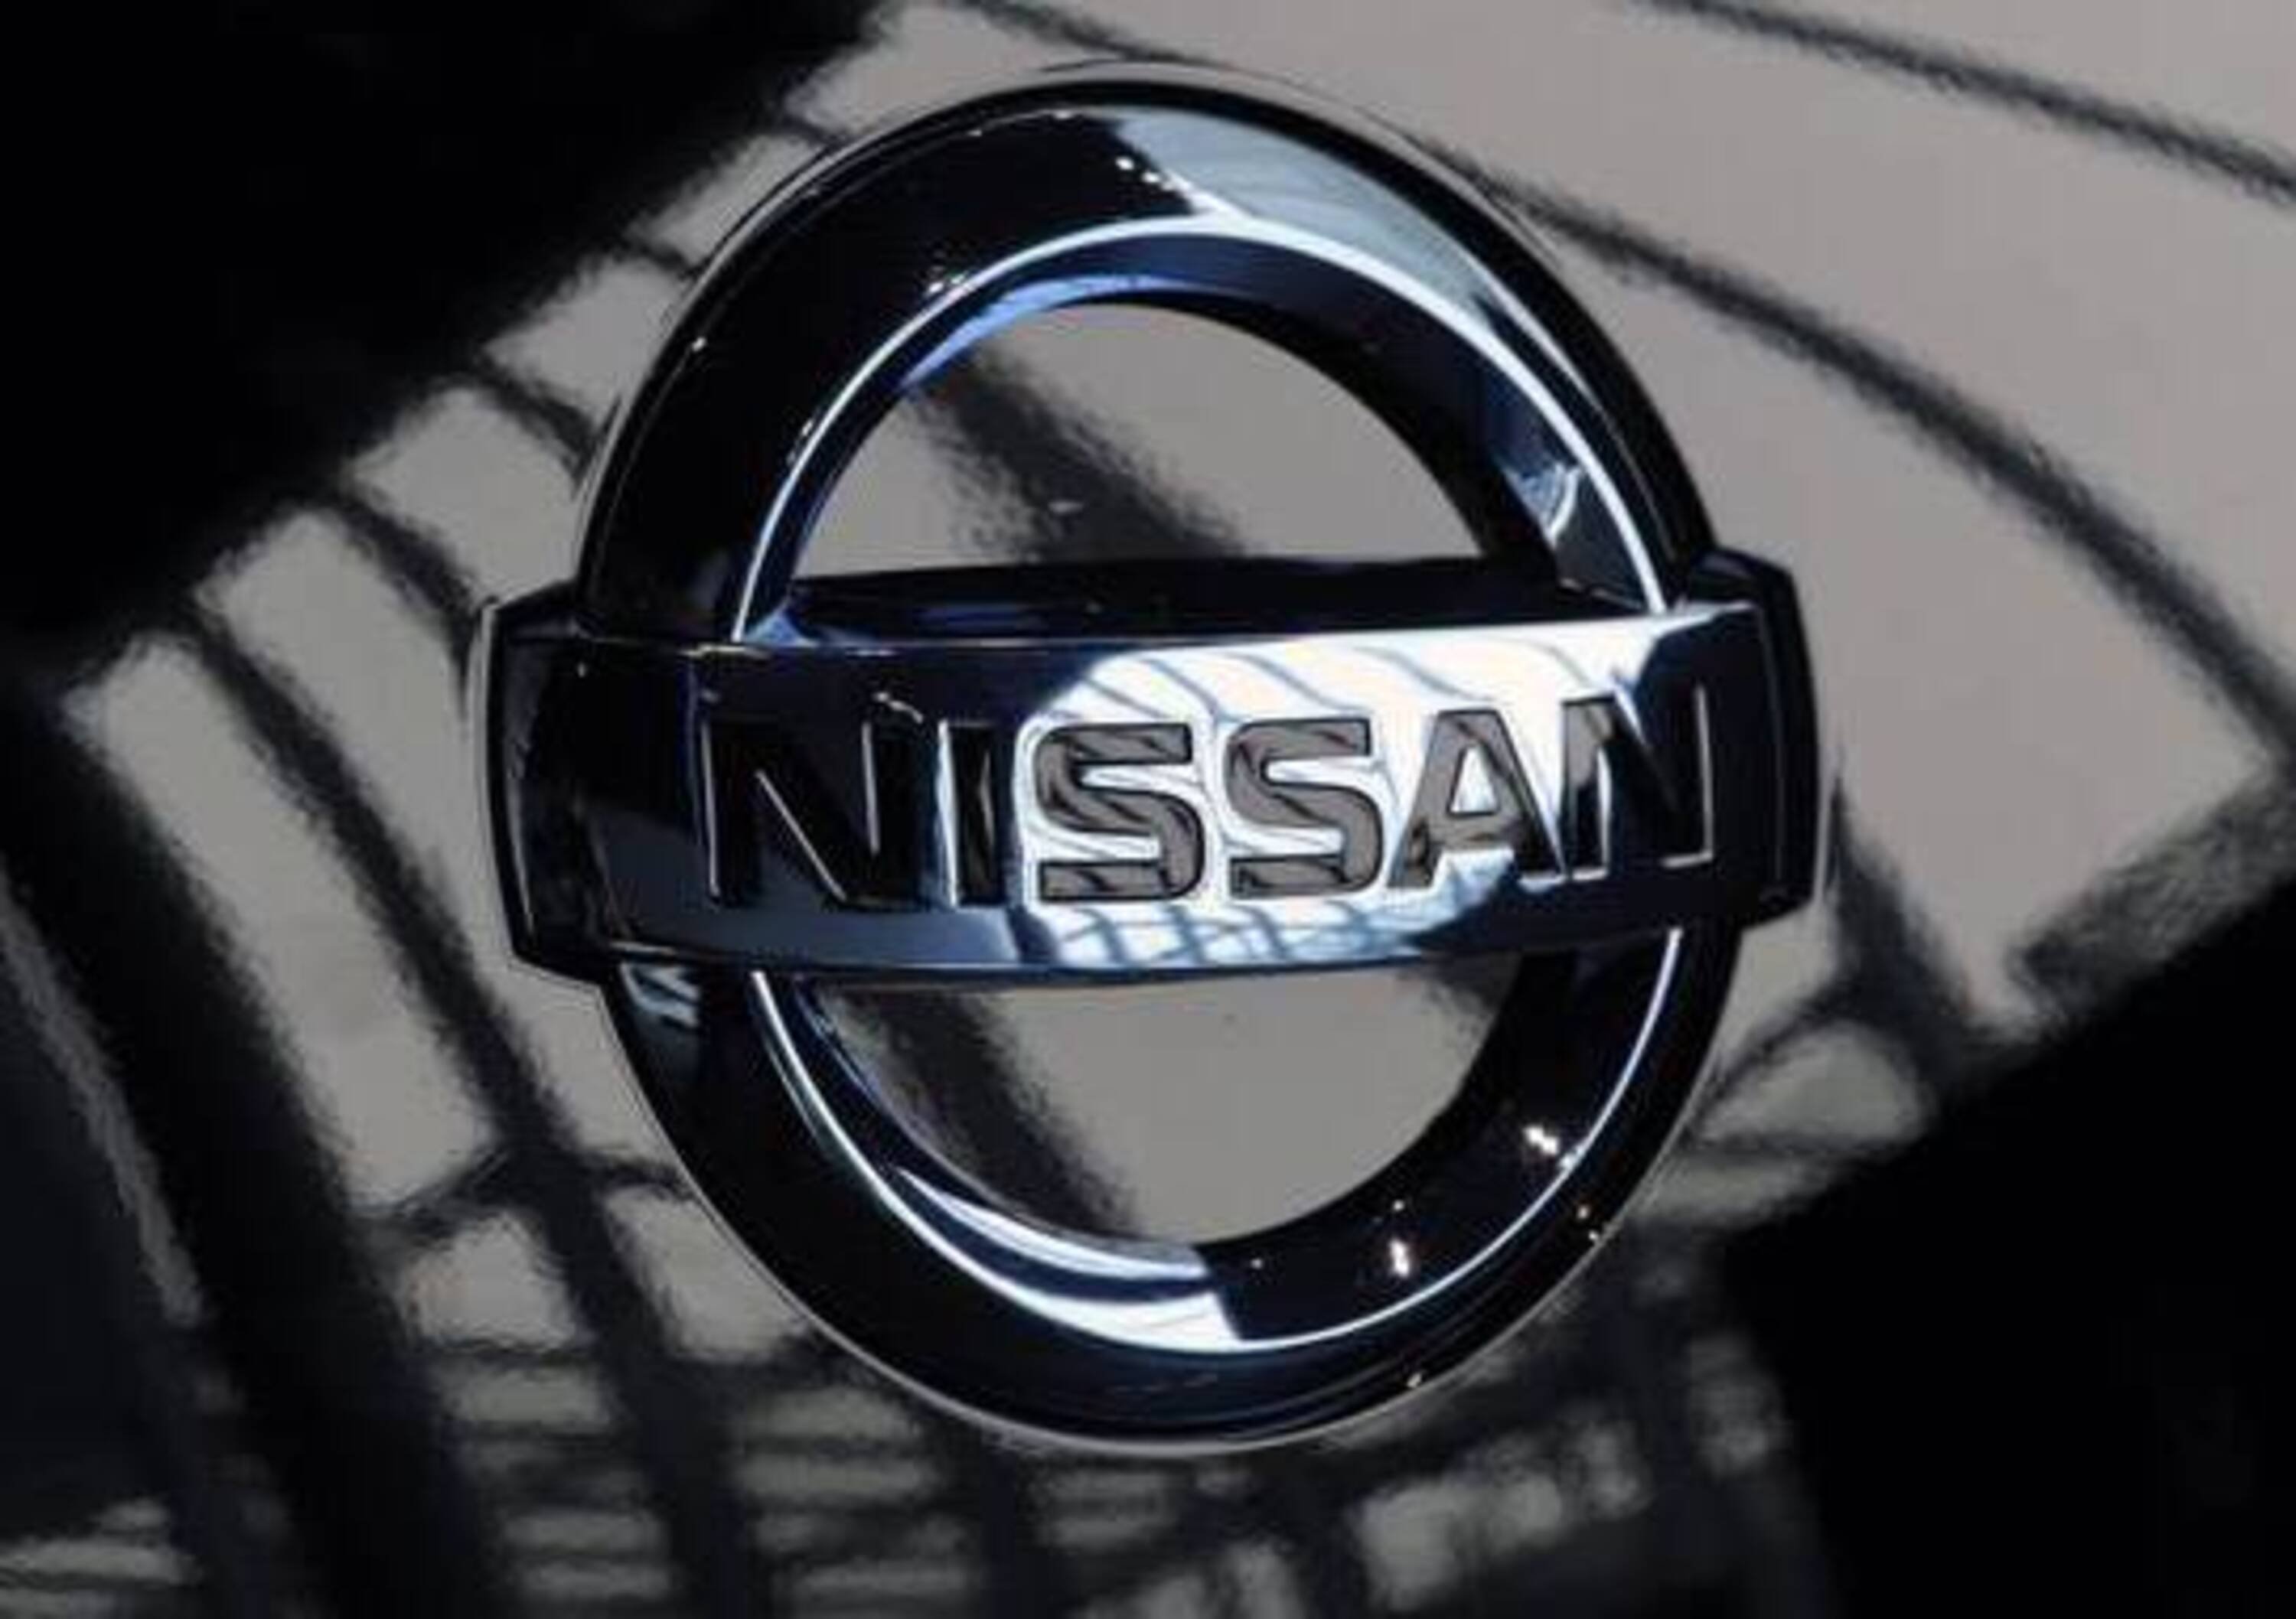 Nissan Italia premiata come &ldquo;Best Workplace 2012&rdquo;